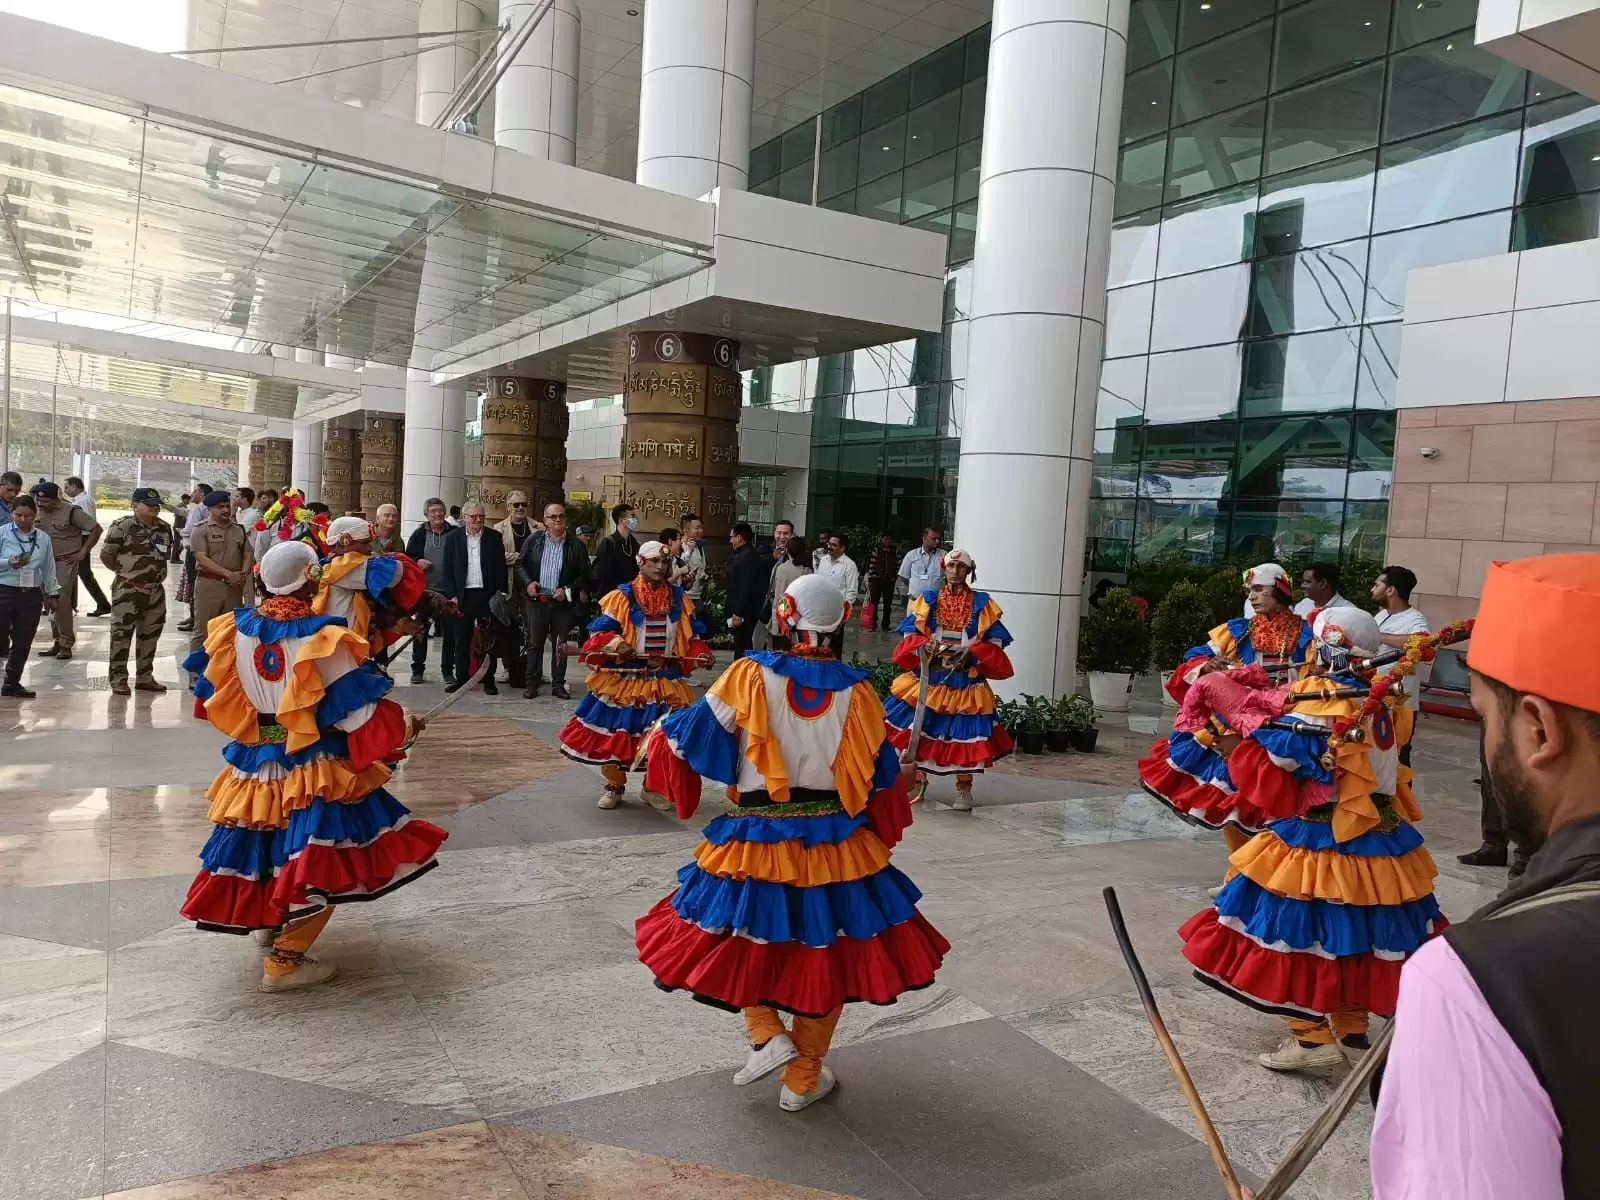 जी-20 समिट के लिए उत्तराखंड पहुंचे विदेशी मेहमानों का जौलीग्रांट एयरपोर्ट पर पारंपरिक स्वागत